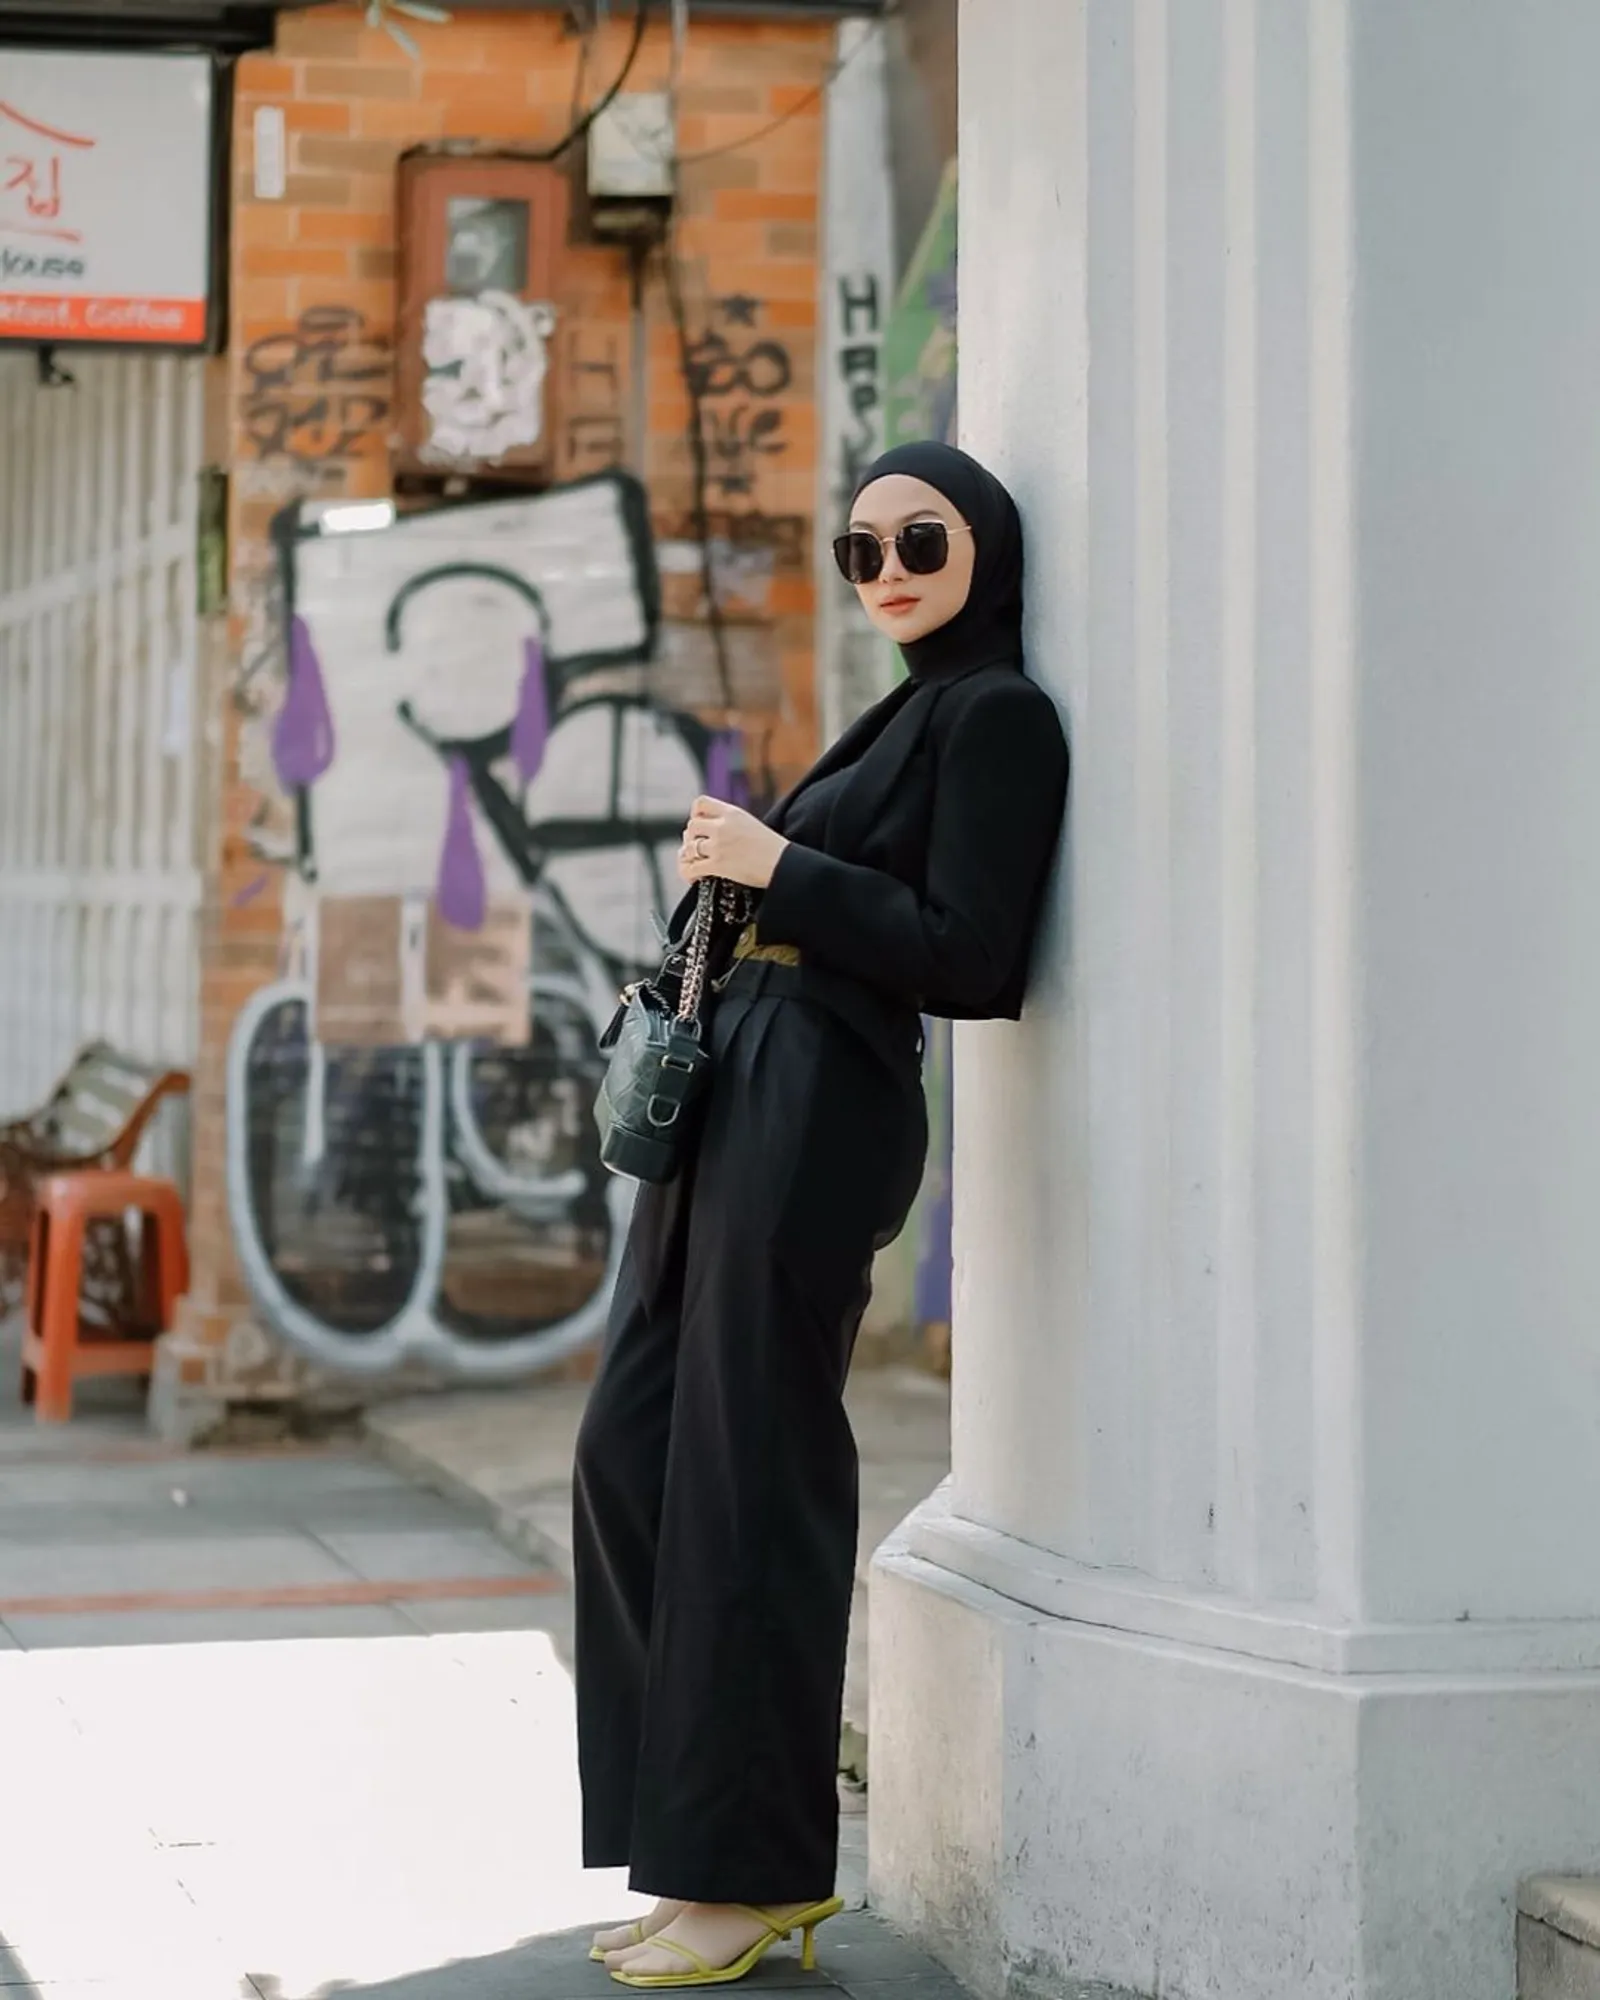 Rekomendasi Warna Hijab yang Membuat Wajah Terlihat Lebih Tirus